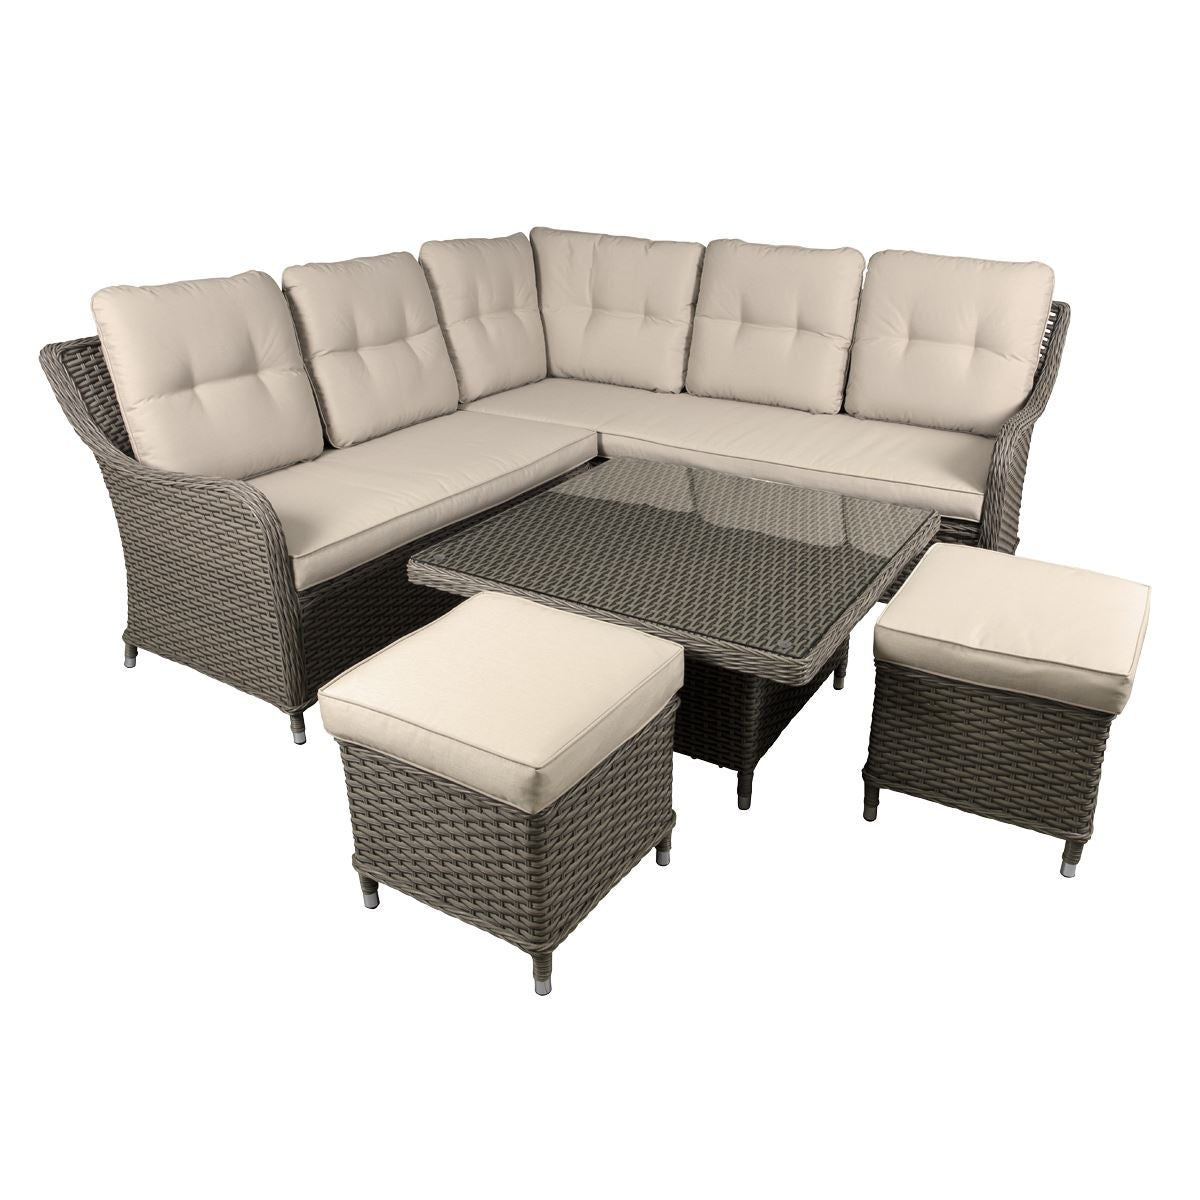 Dellonda Chester Outdoor Rattan Wicker Corner Sofa & Adjustable Table Set, Brown